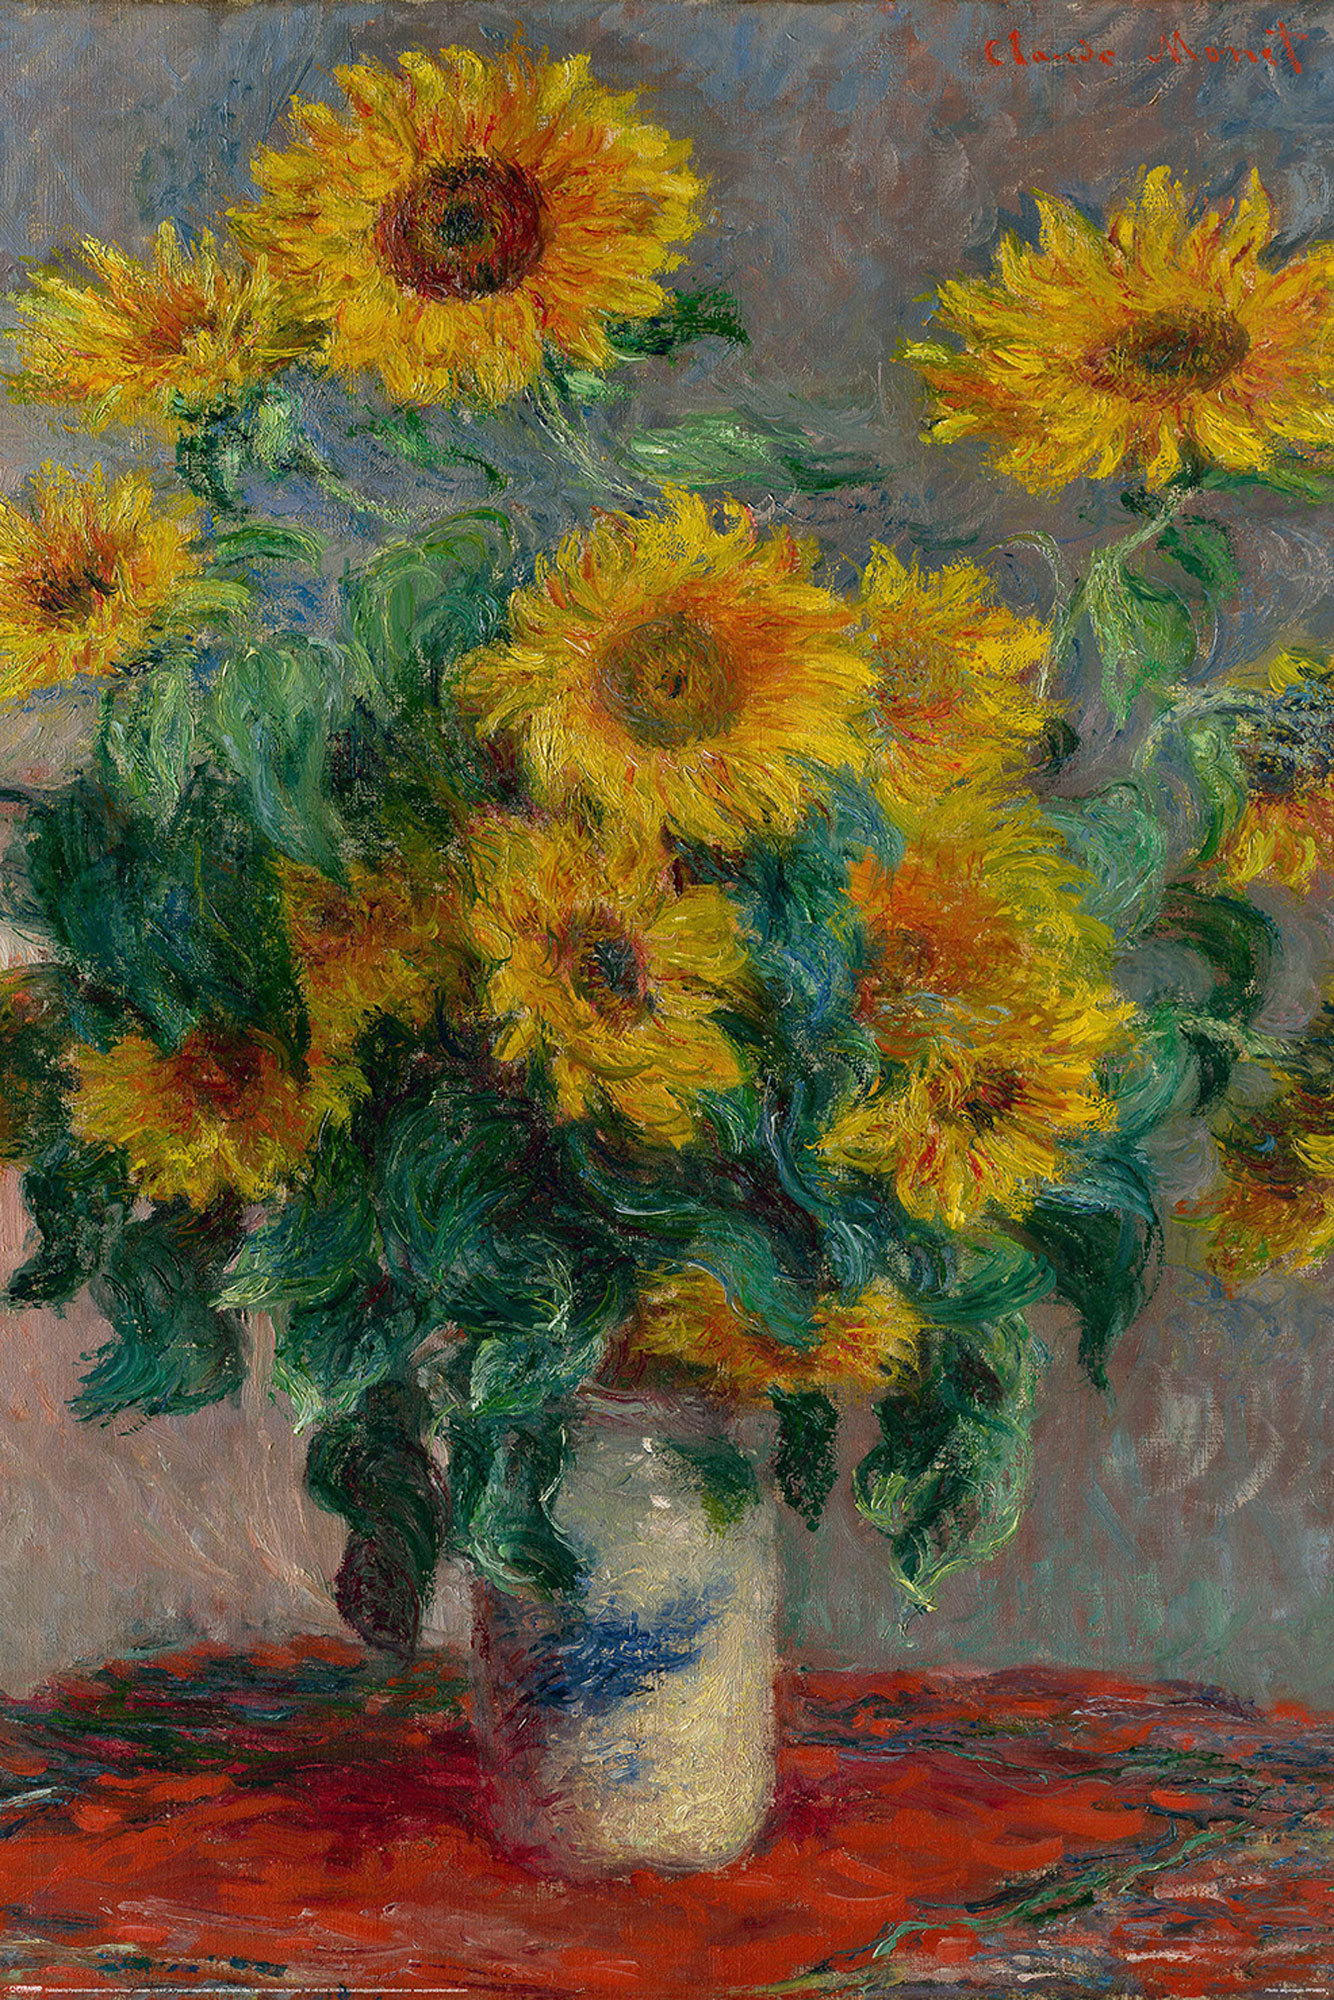 Monet - Bouquet of Sunflowers